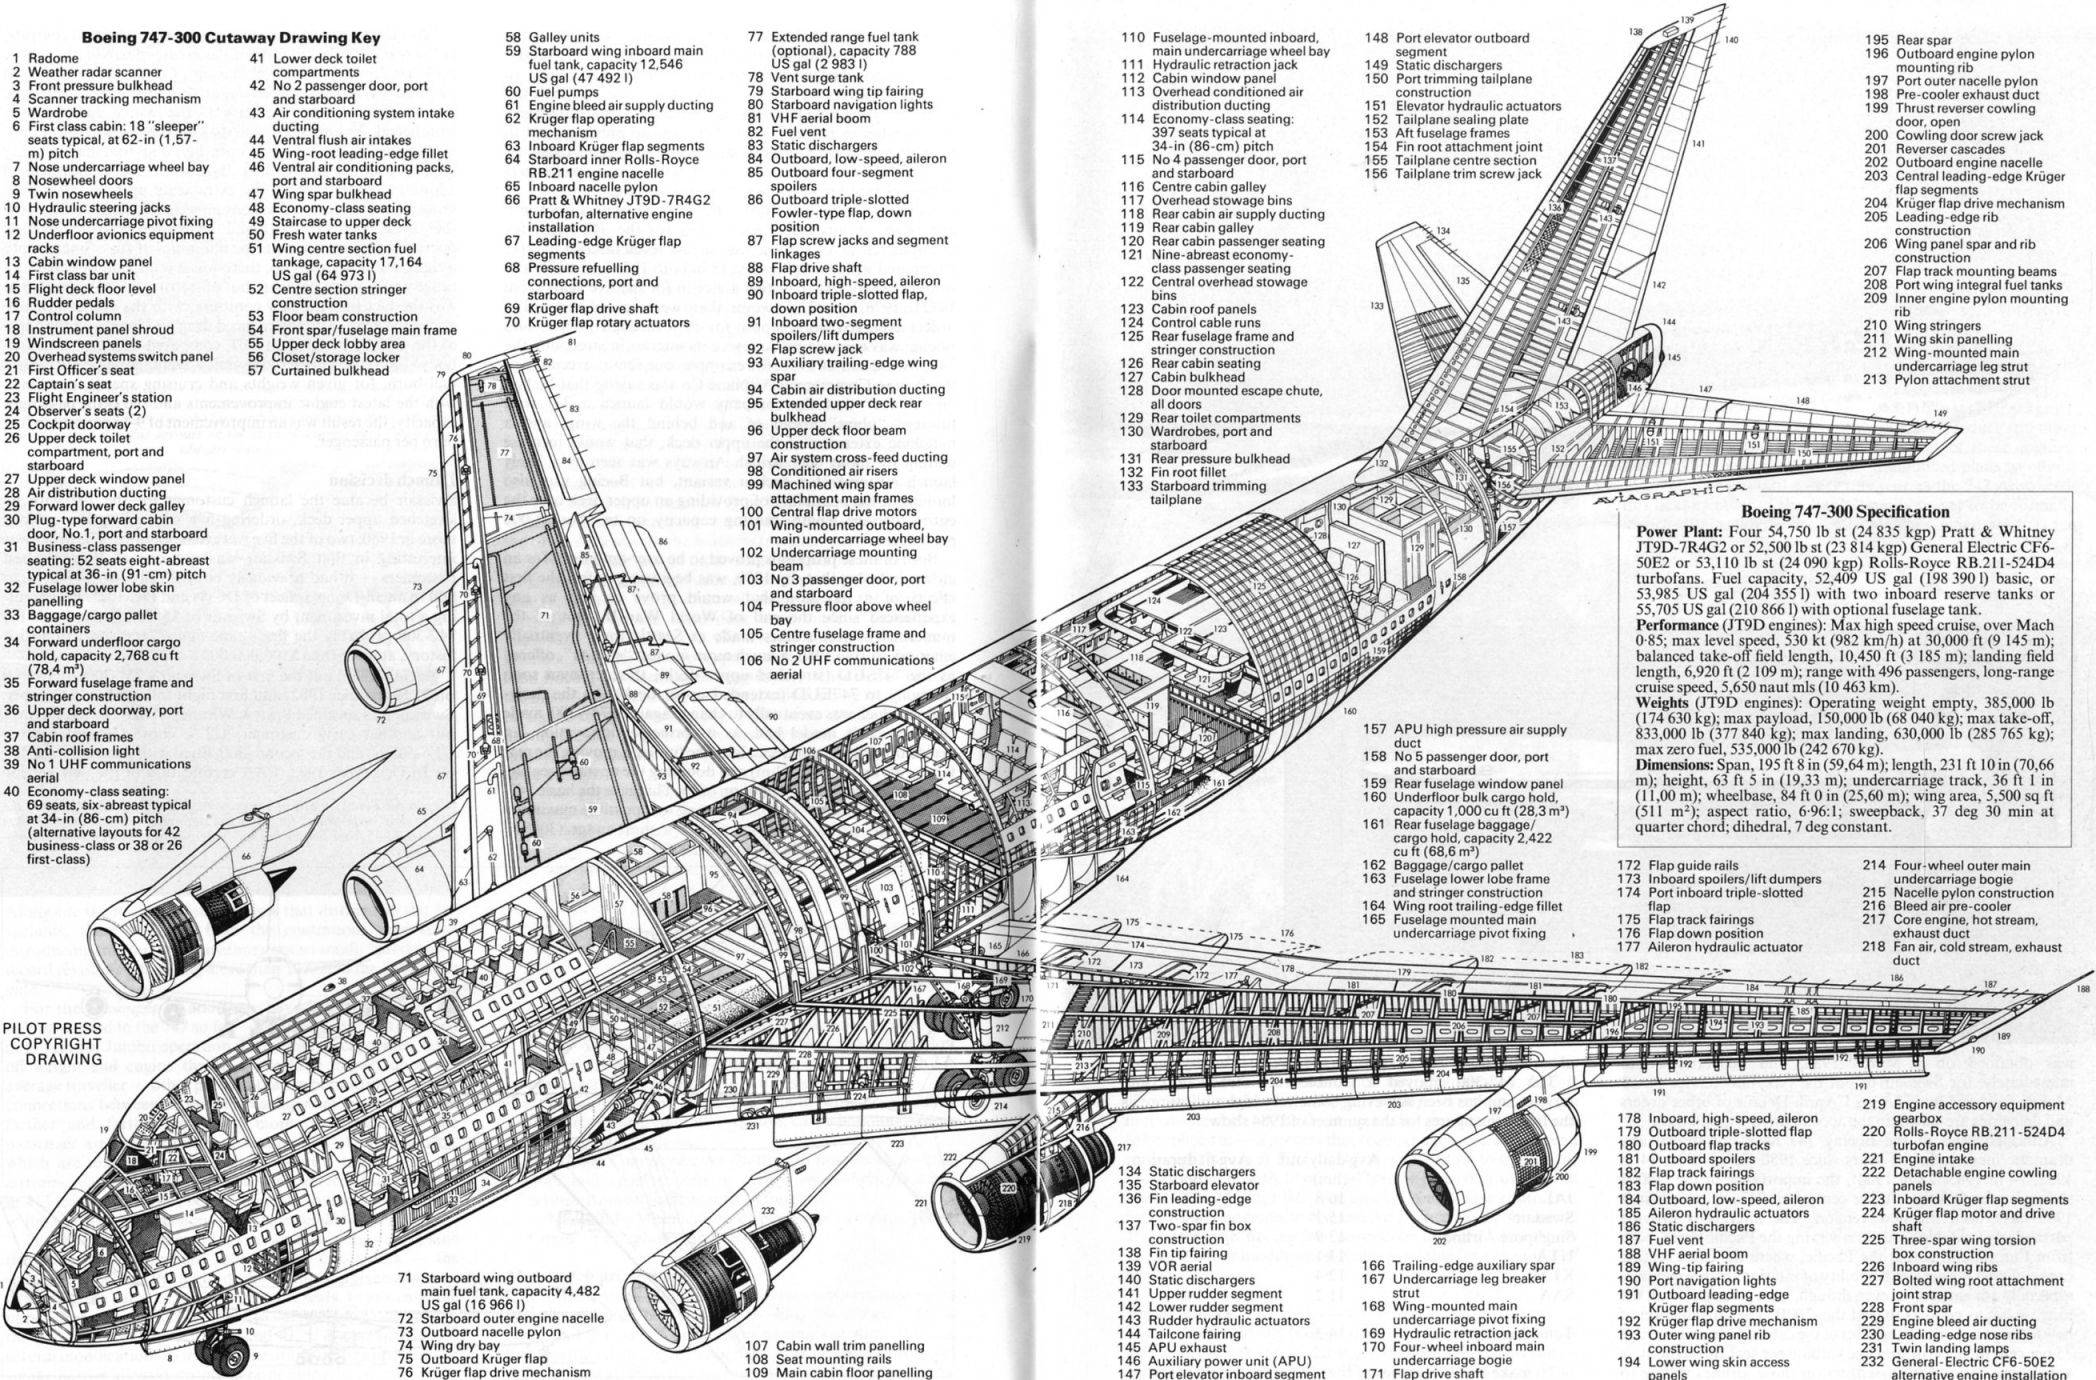 Схема салона, лучшие места, характеристики и история создания самолета boeing 747-8